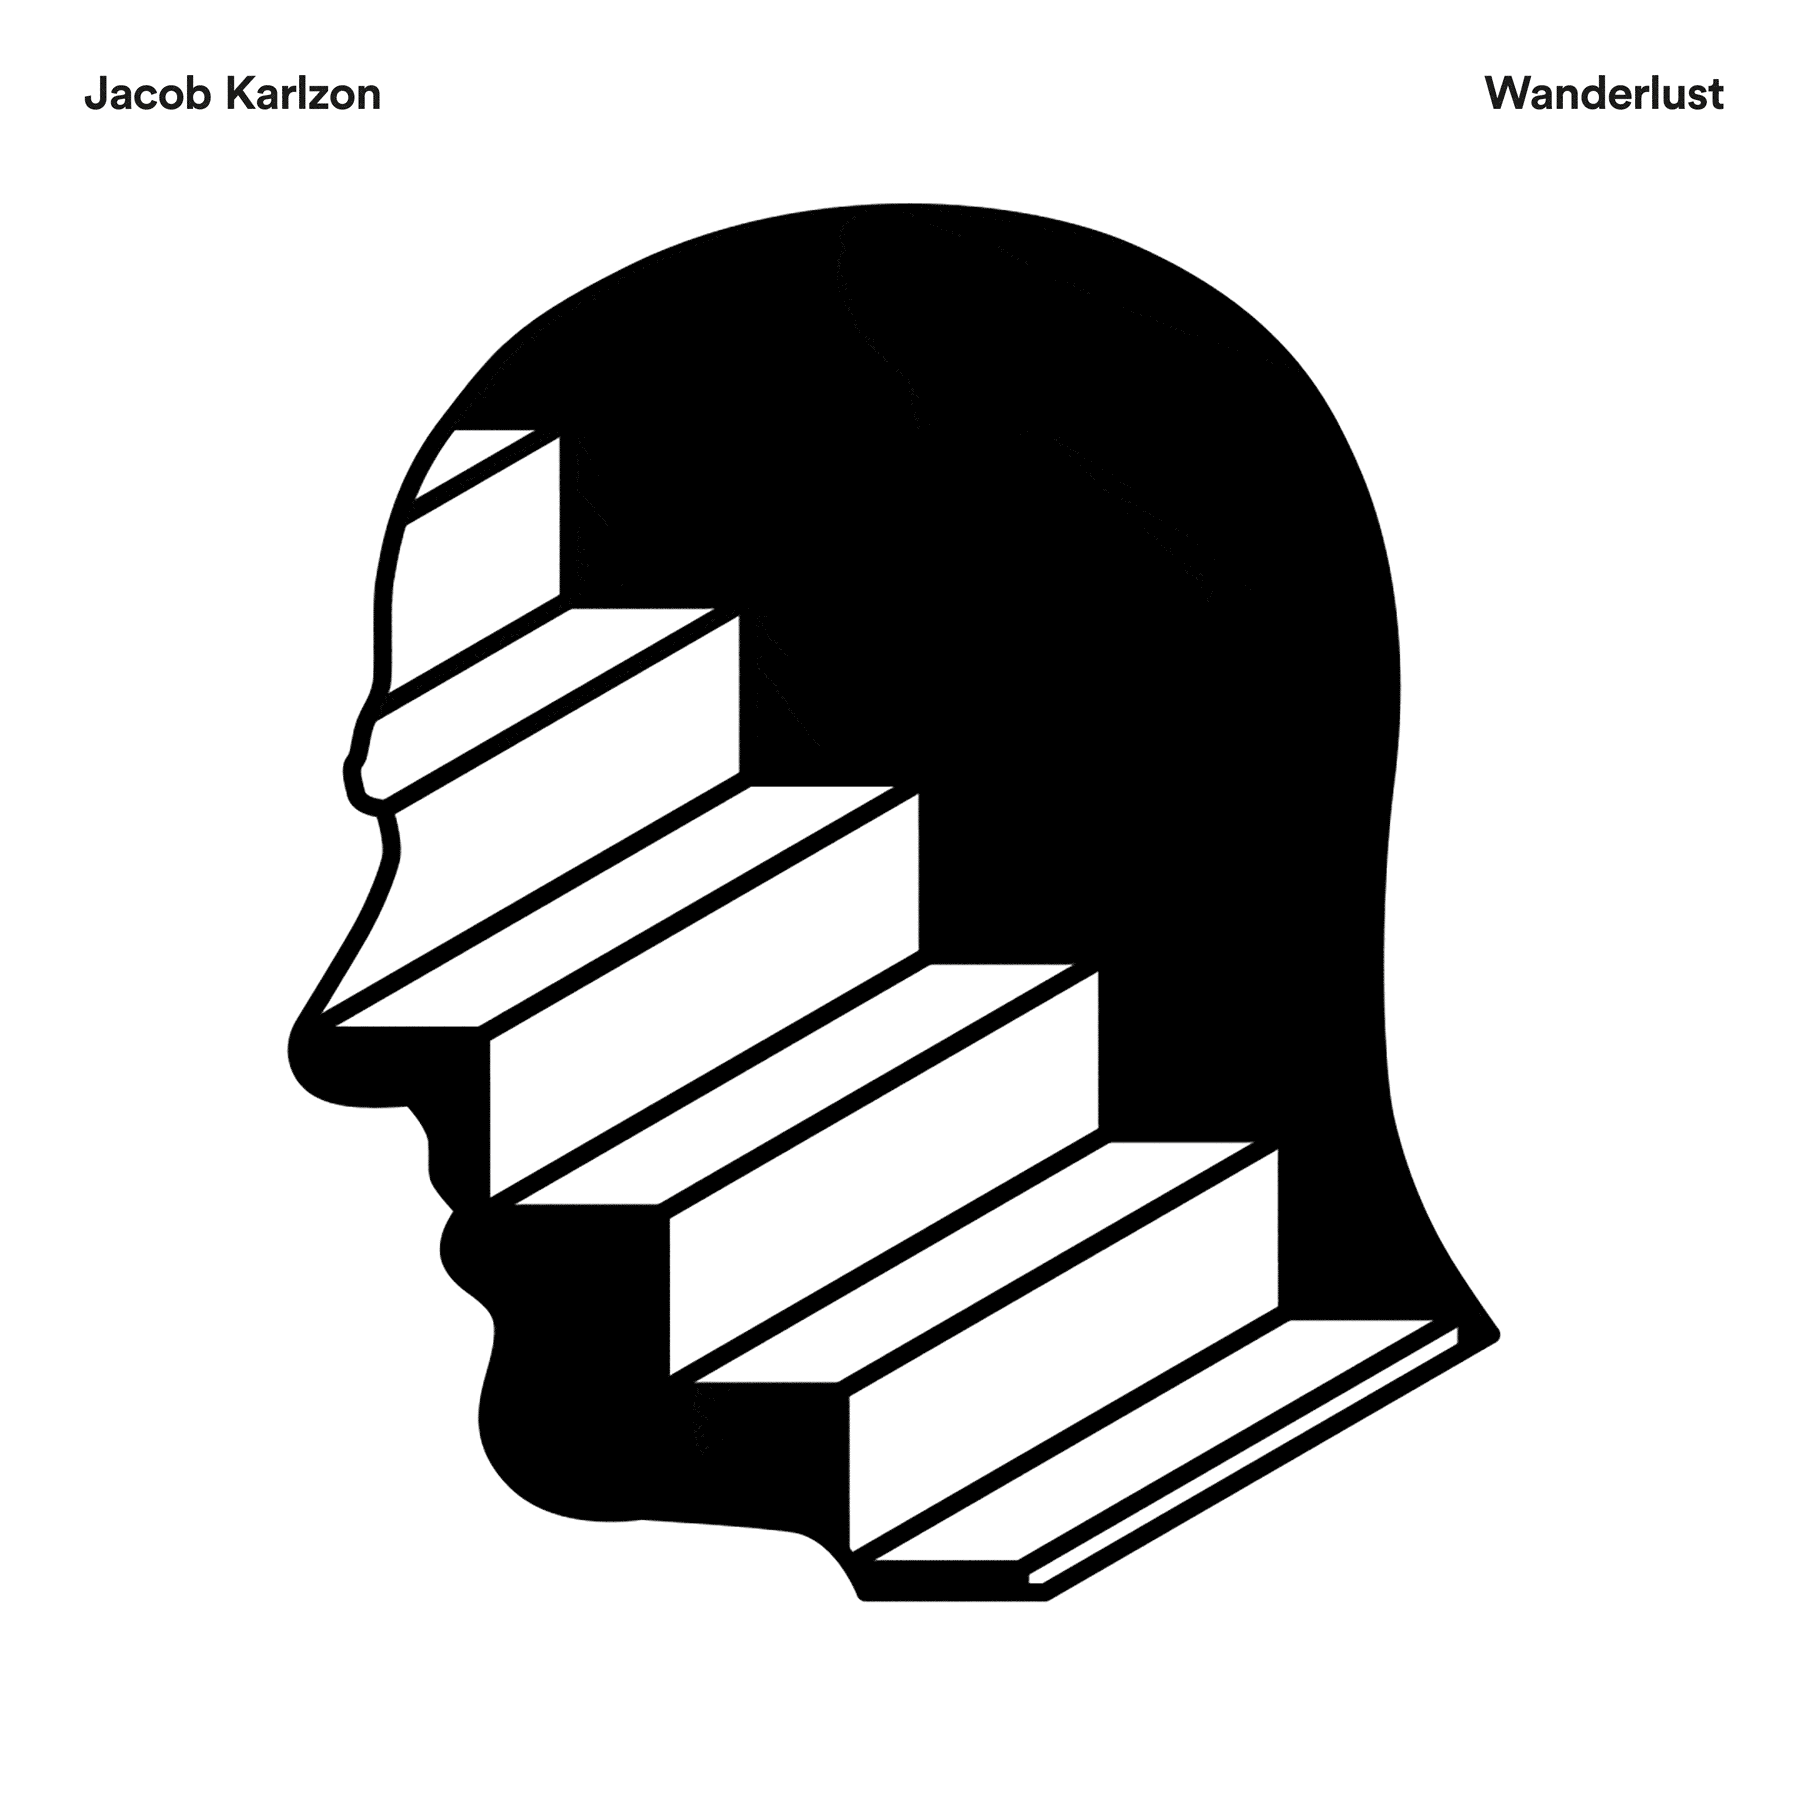 Jacob Karlzon. Wanderlust. 12